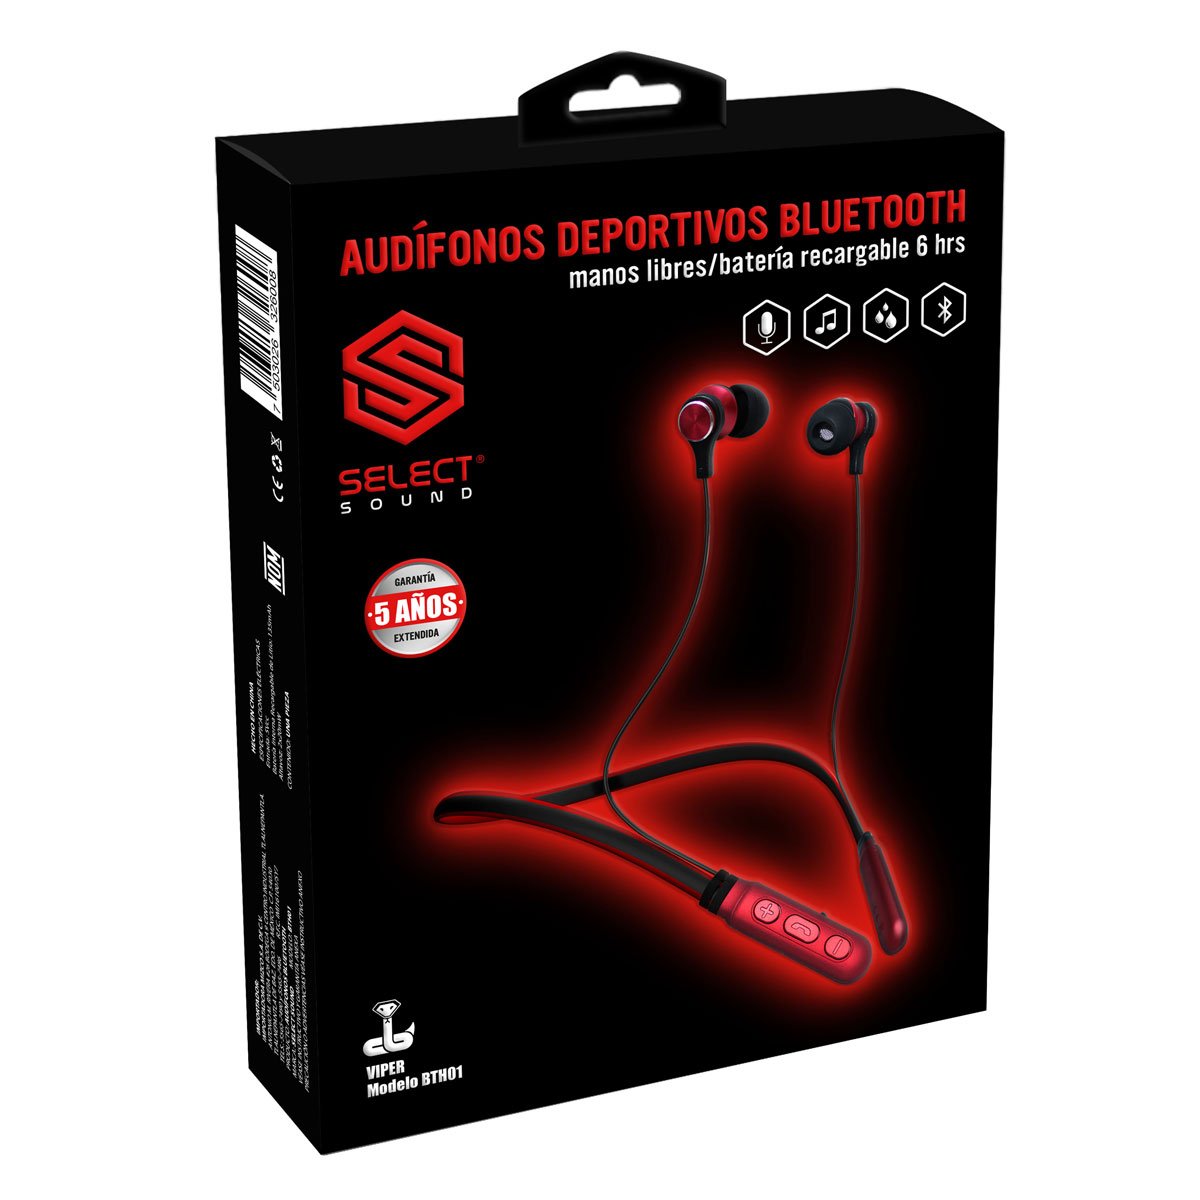 Audífonos Deportivos Bth01 Bluetooth Negro con Rojo Select Sound